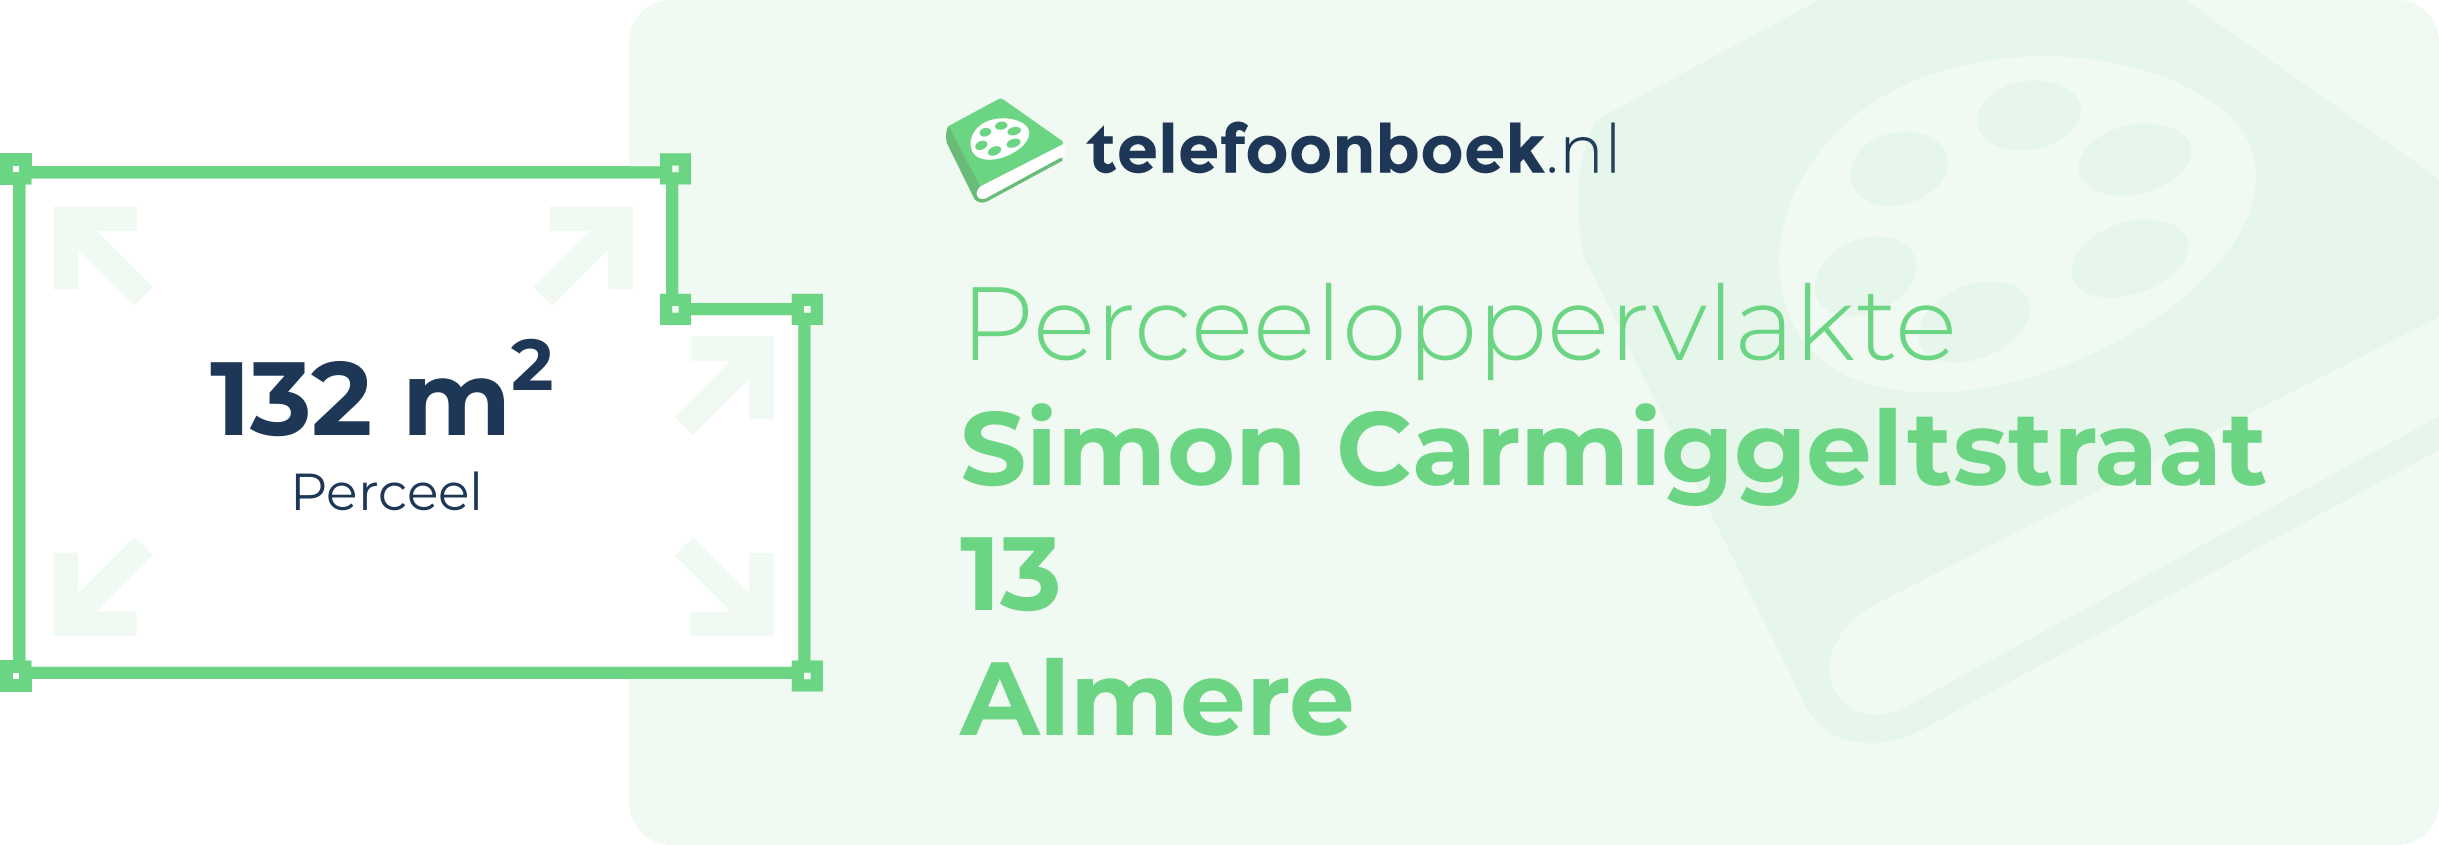 Perceeloppervlakte Simon Carmiggeltstraat 13 Almere